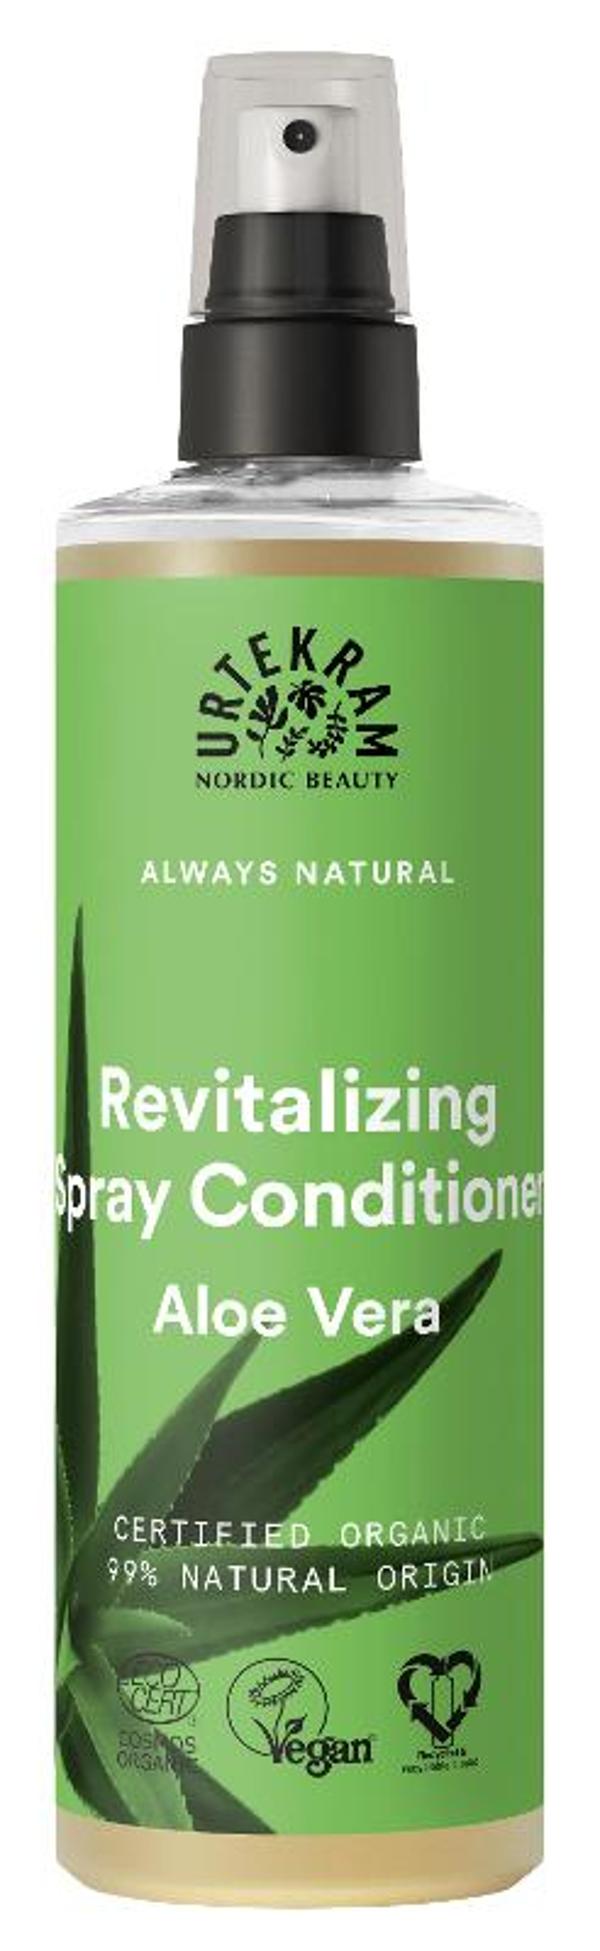 Produktfoto zu Spray Conditioner Aloe vera von Urtekram